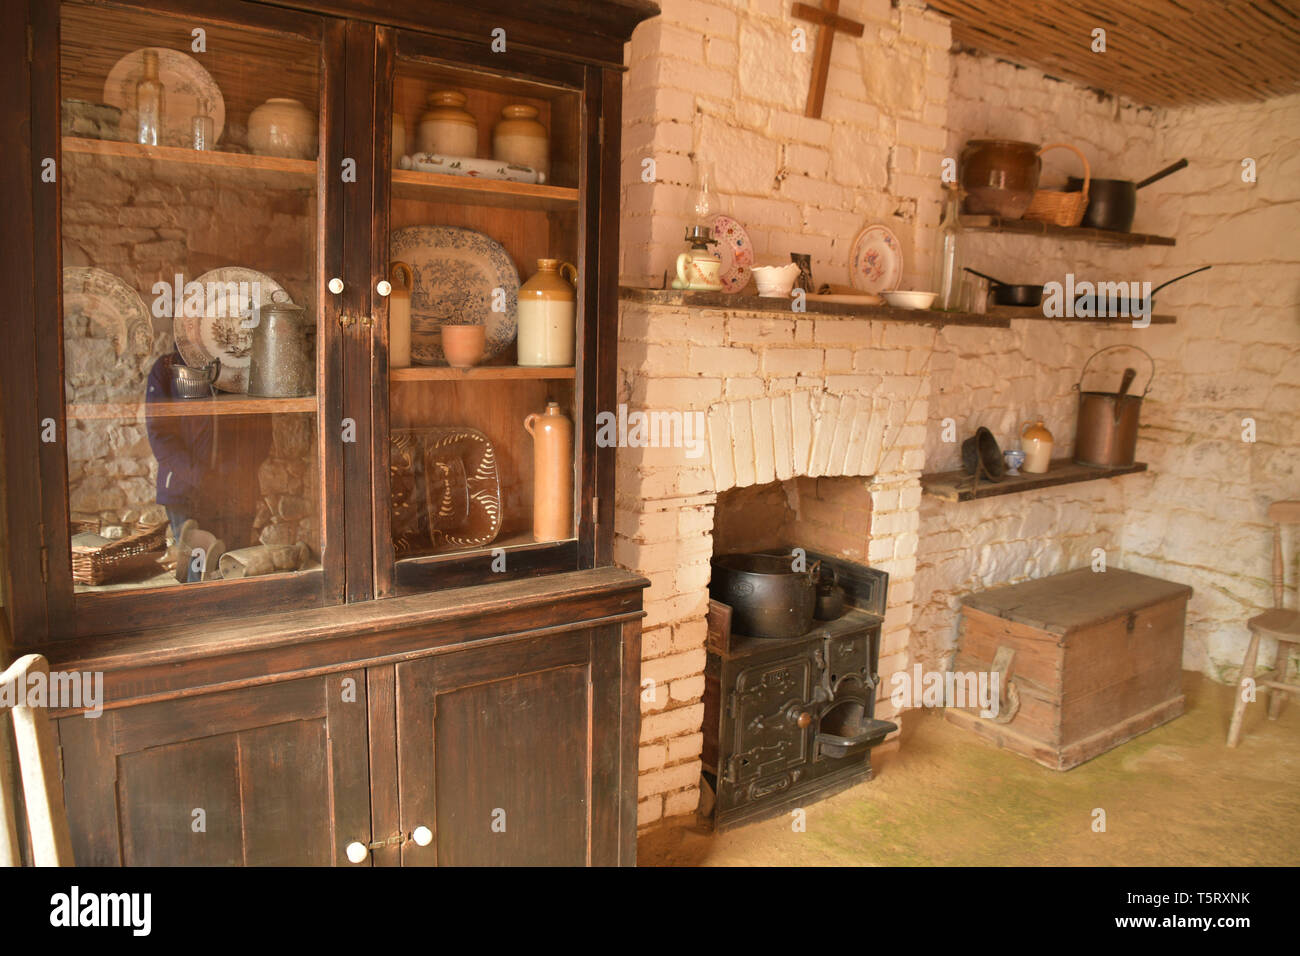 Petite cuisine typique avec cuisine en fonte gamme, le meuble de rangement et divers récipients et contenants en terre cuite d'une ferme du 18ème siècle à th Banque D'Images